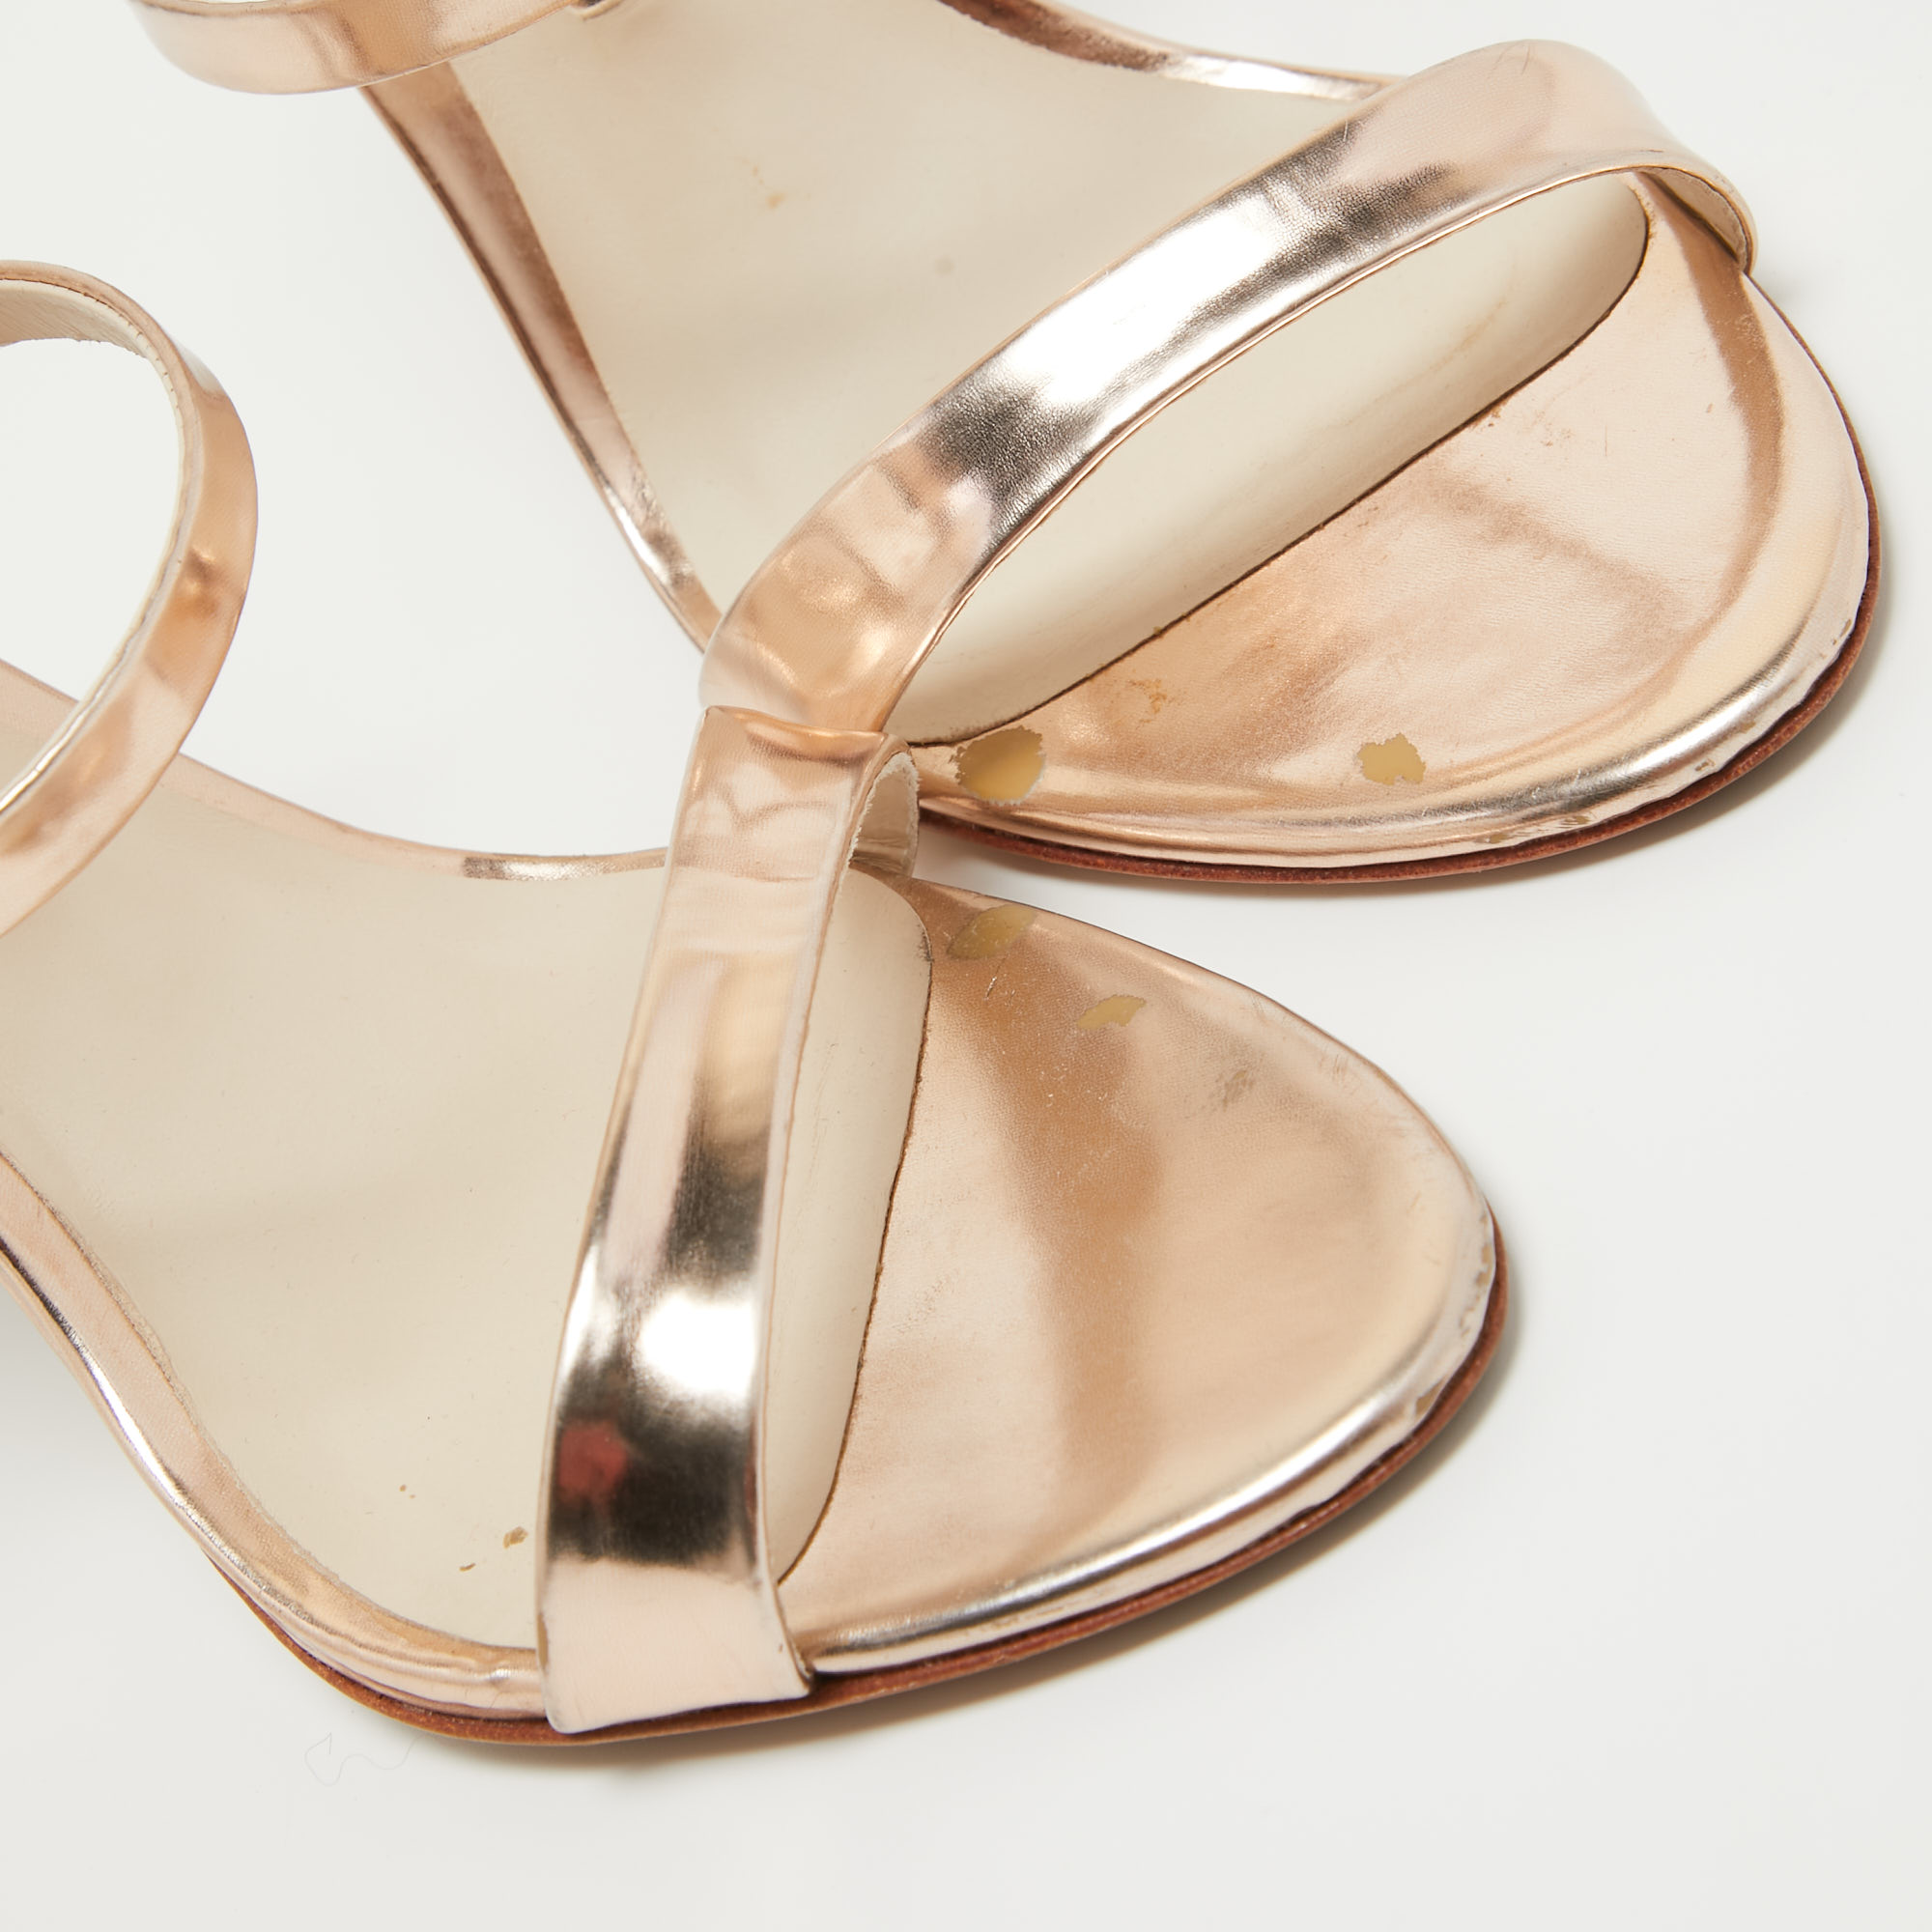 Sophia Webster Rose Gold Leather Rosalind Sandals Size 37.5